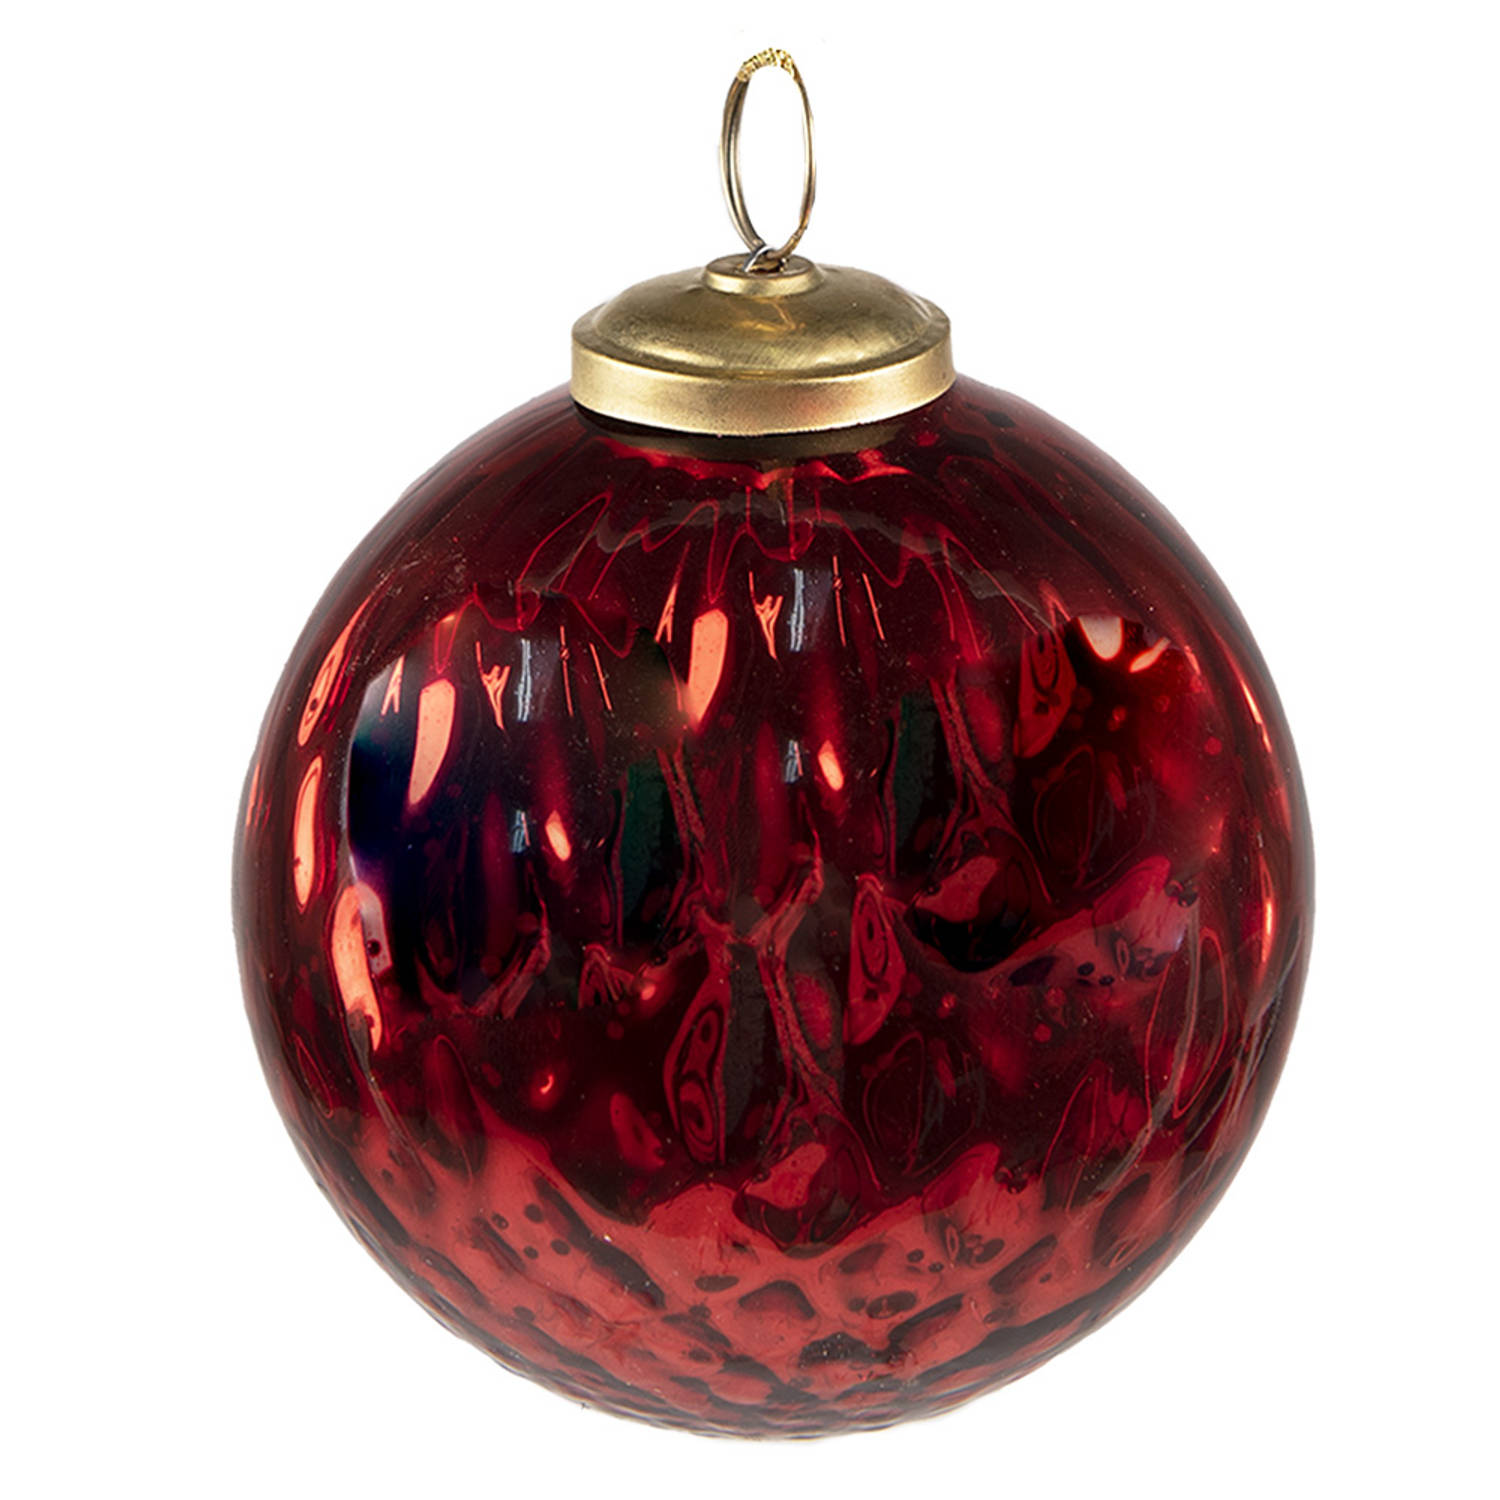 HAES DECO - Kerstbal - Formaat Ø 9x11 cm - Kleur Rood - Materiaal Glas - Kerstversiering, Kerstdecoratie, Decoratie Hanger, Kerstboomversiering